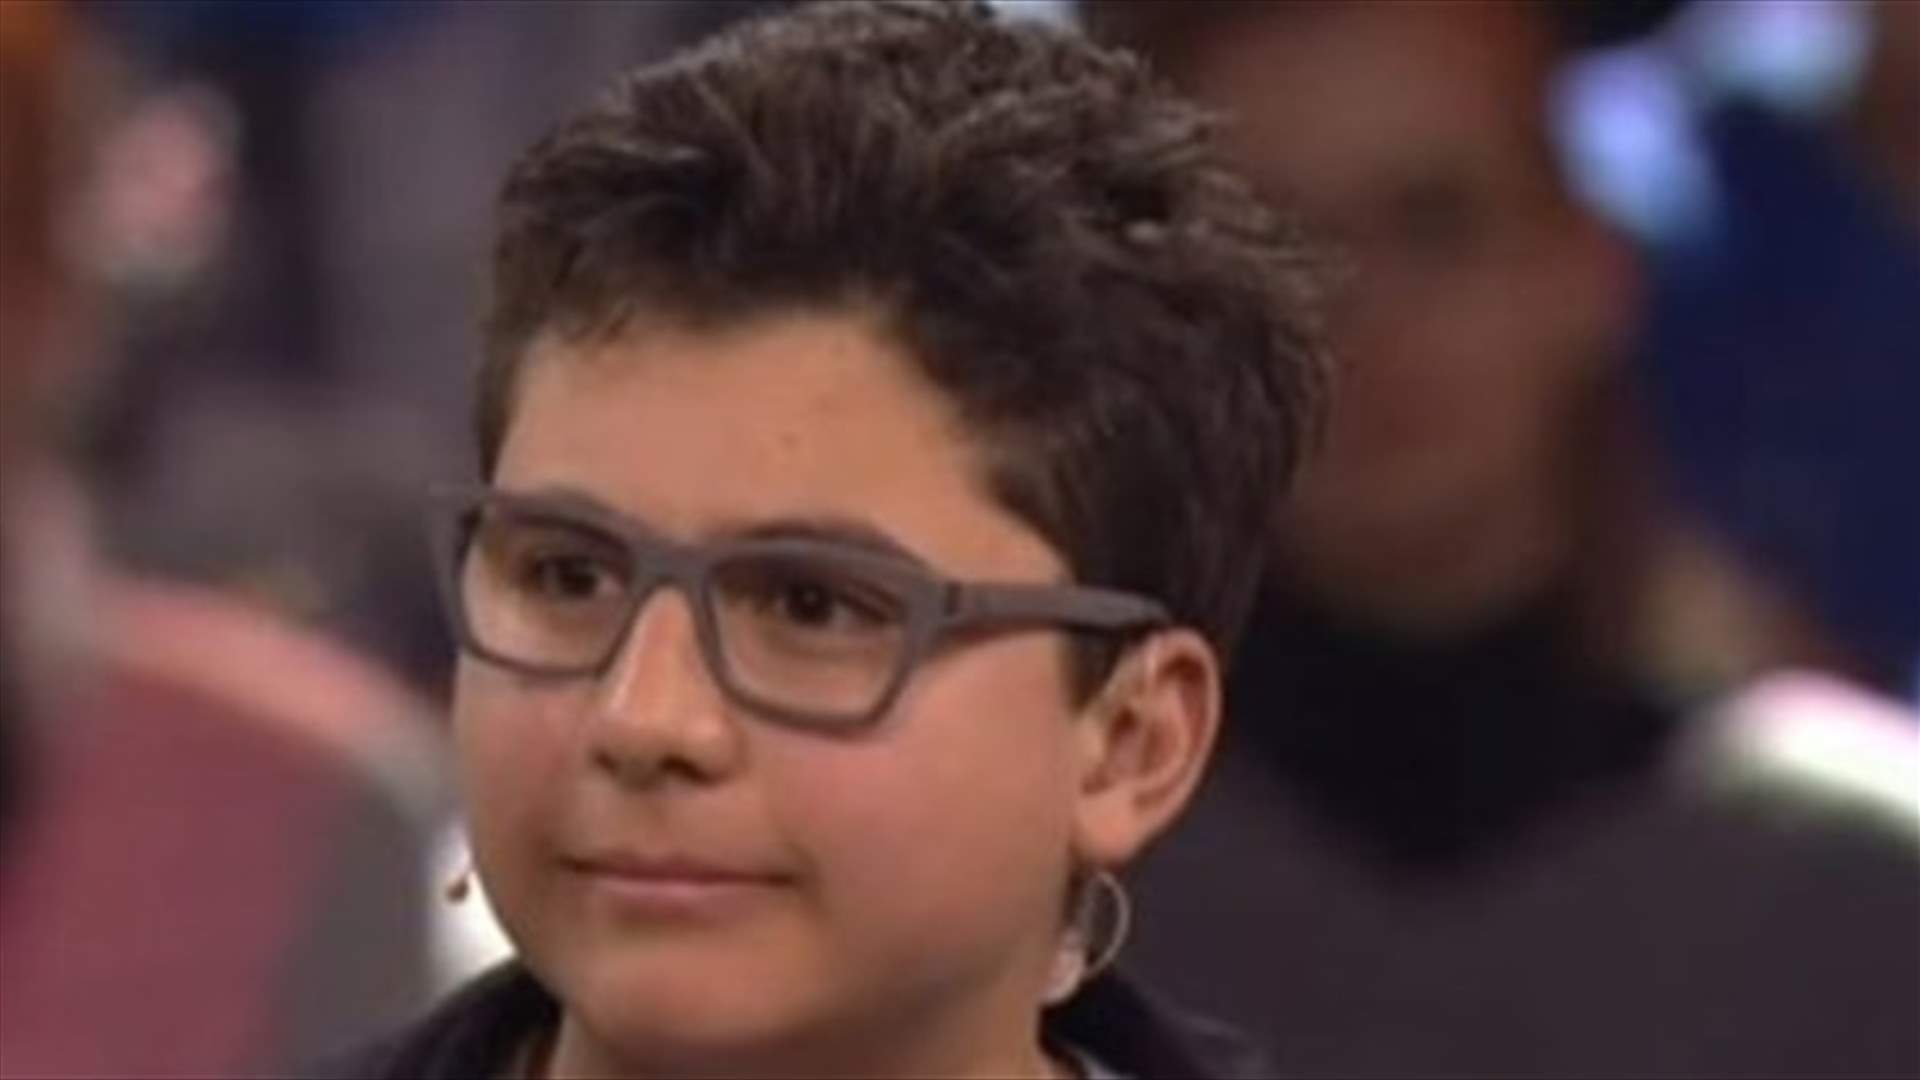 بالفيديو- طفل لبناني عبقري يتفوّق على أفضل المعلمين في ألمانيا